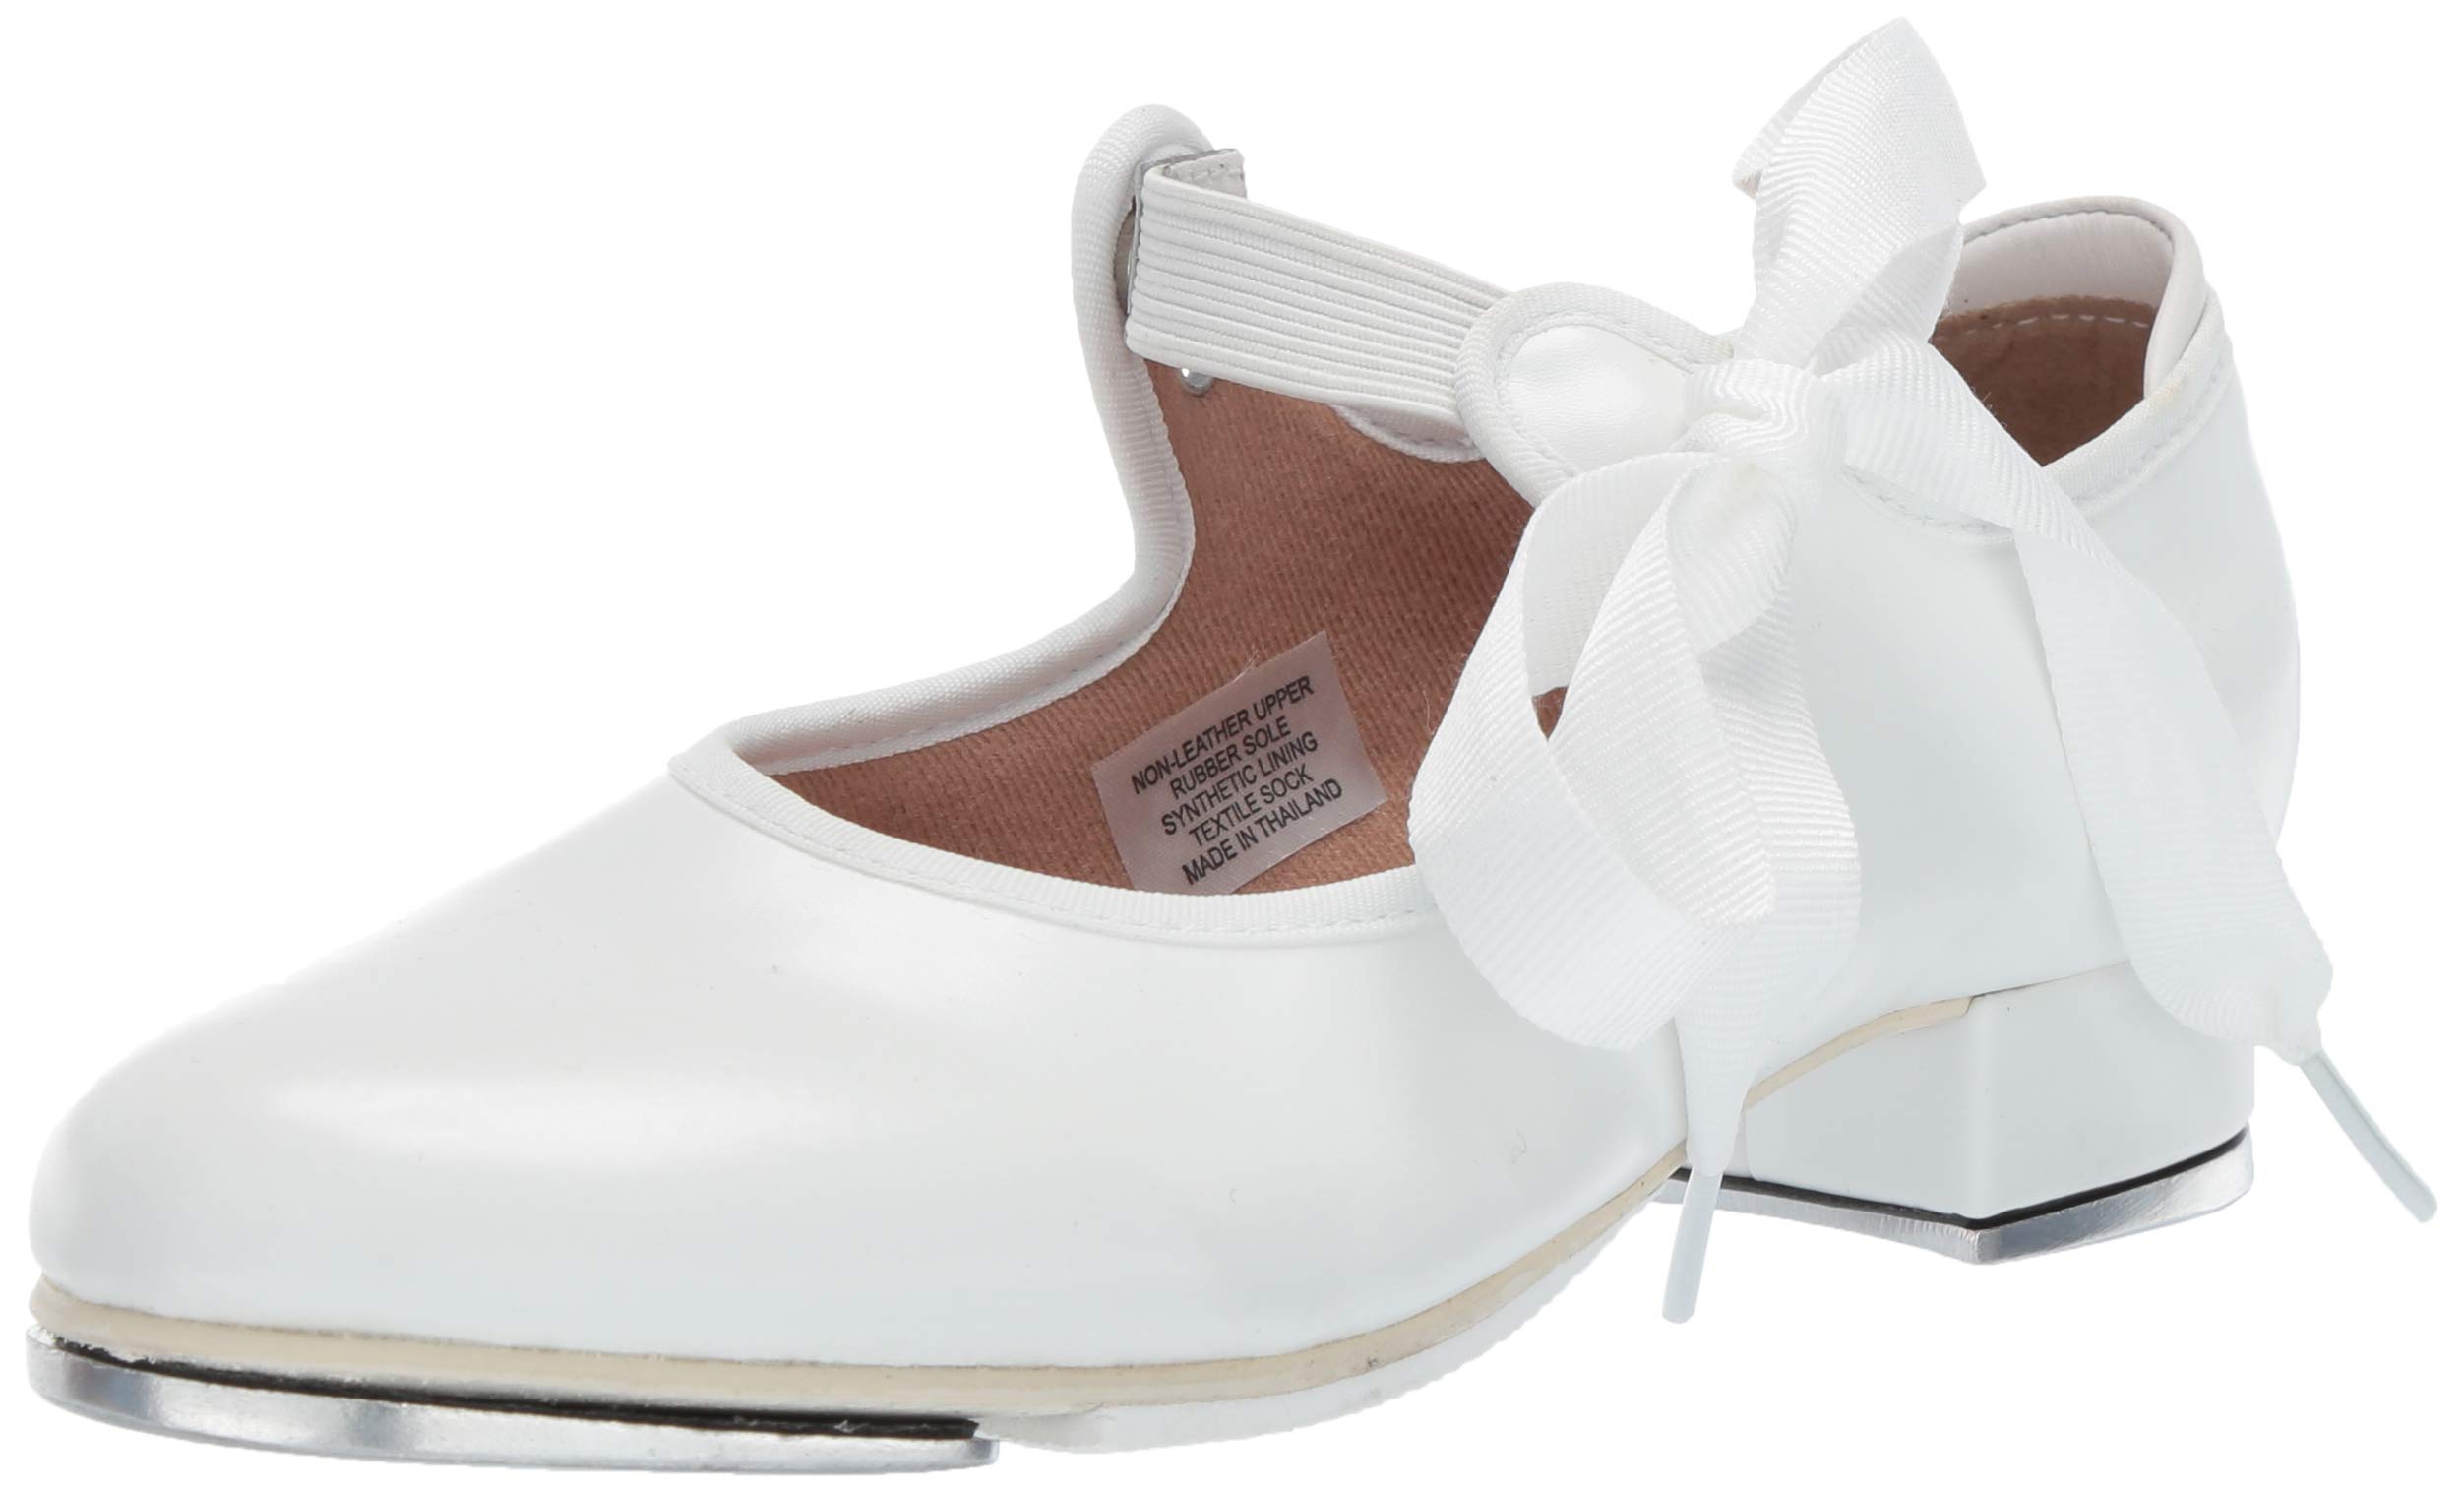 Bloch Dance Girl's Annie Tyette Tap Shoe